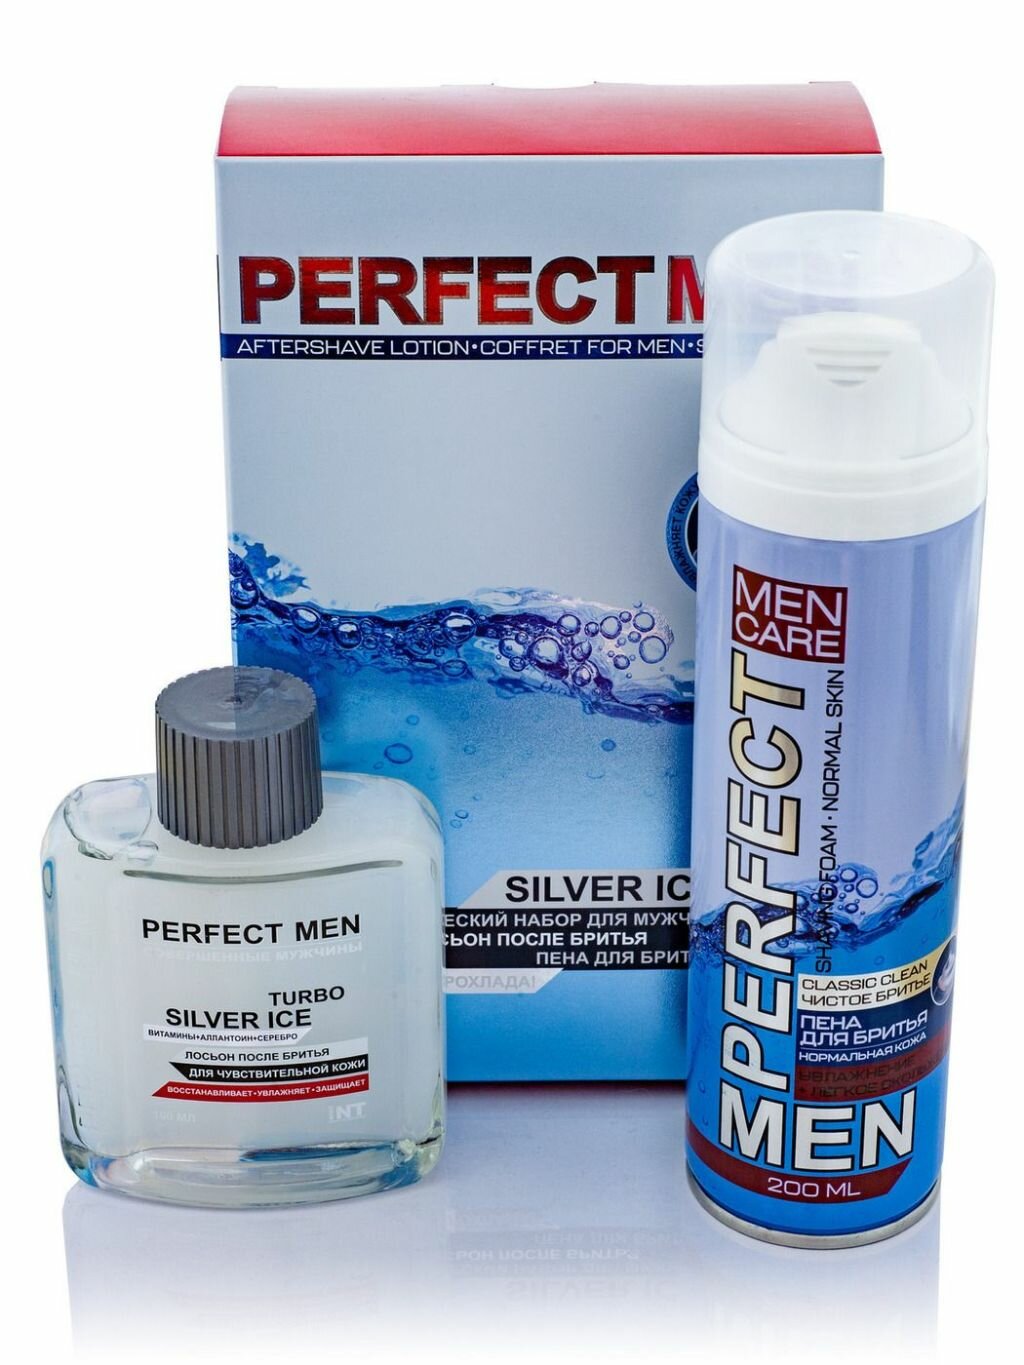 Набор из 3 штук Косметический набор для мужчин Perfect men Turbo Silver ice Лосьон после бритья 100мл, пена для брит